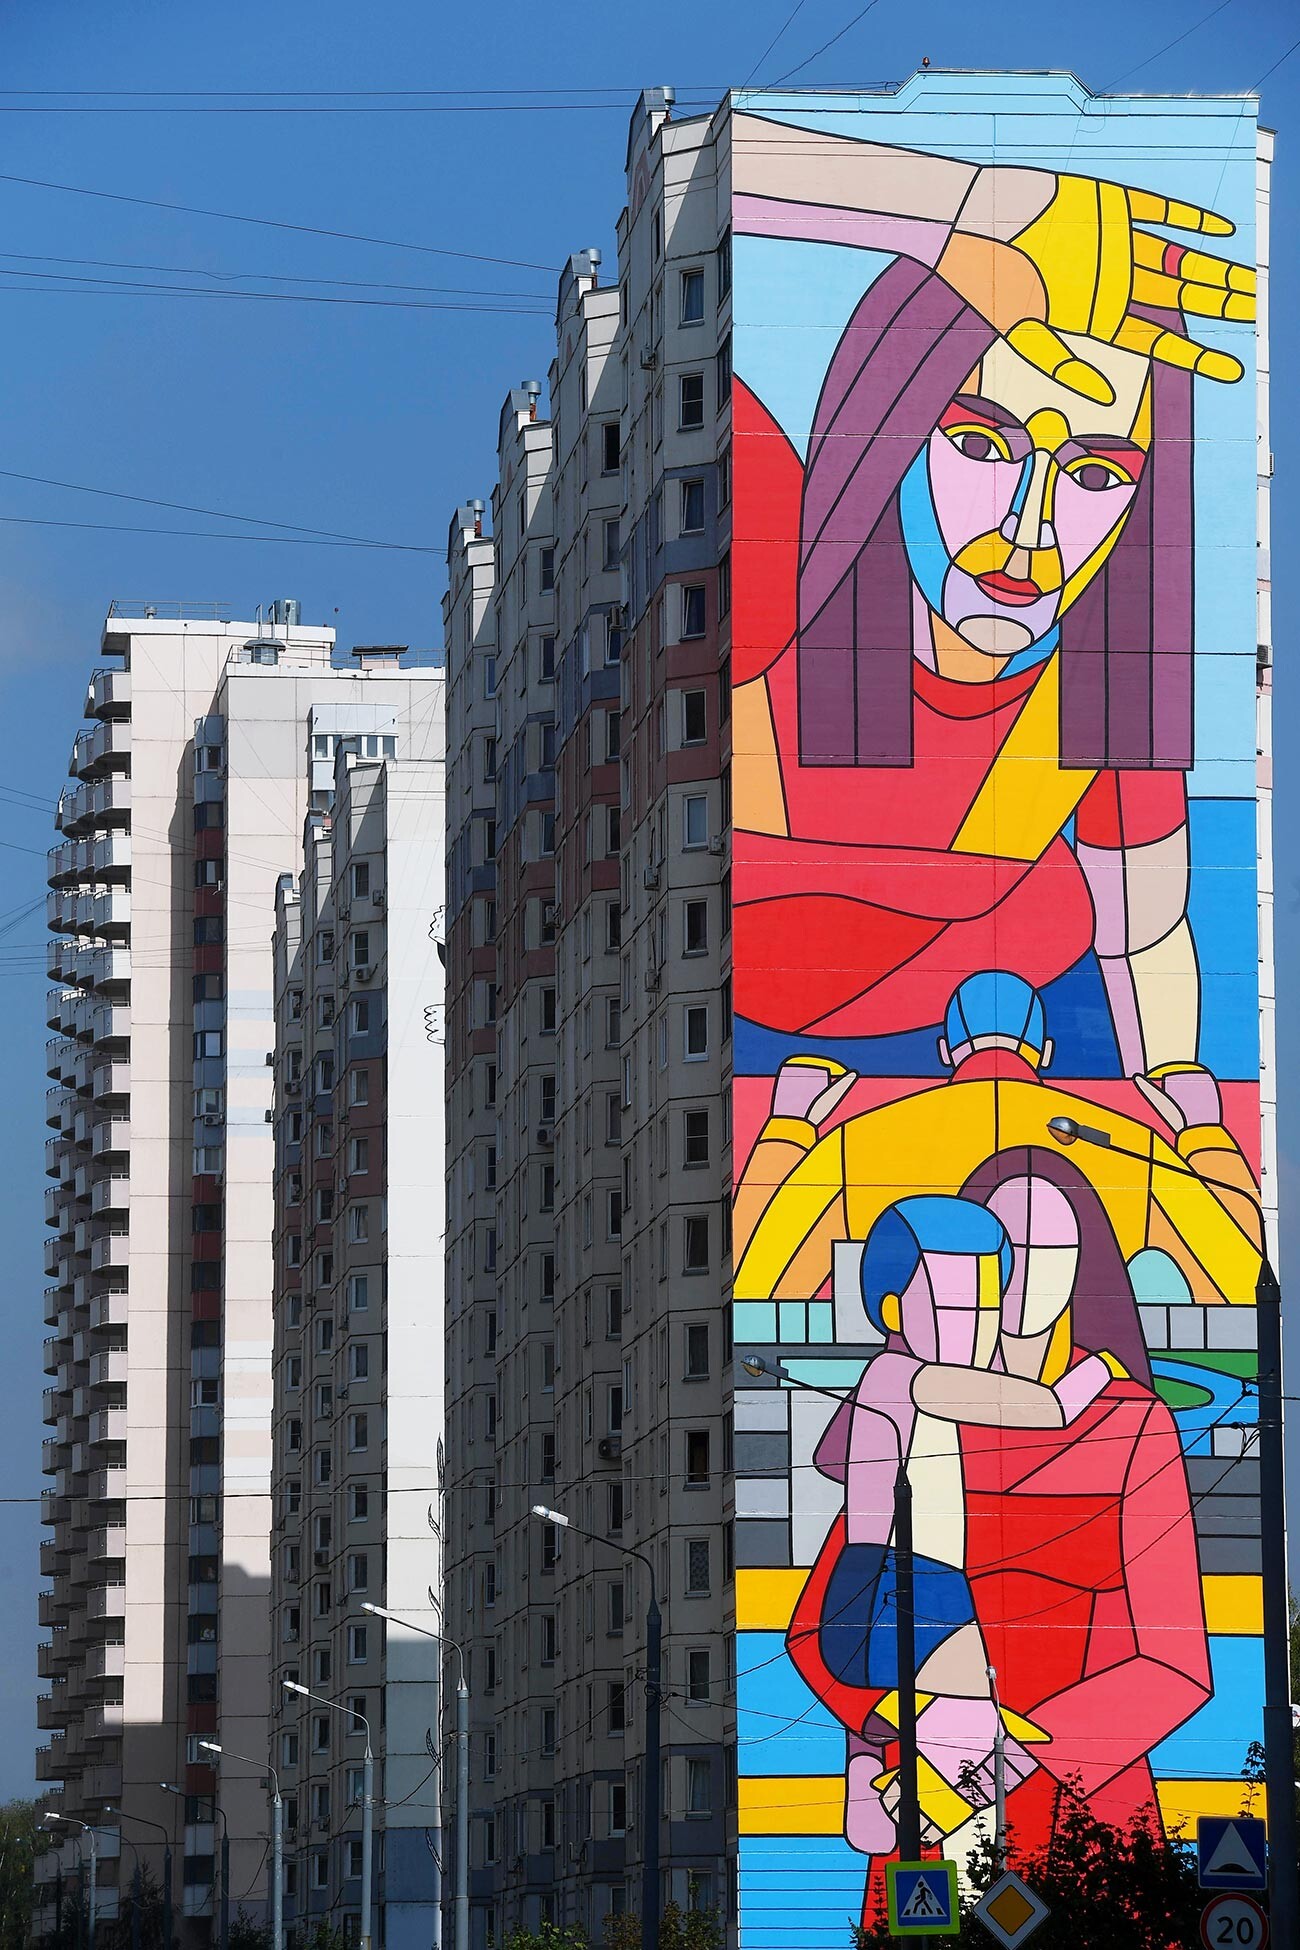 Dmitry Aske's work at the Urban Morphogenesis street art festival, 2019